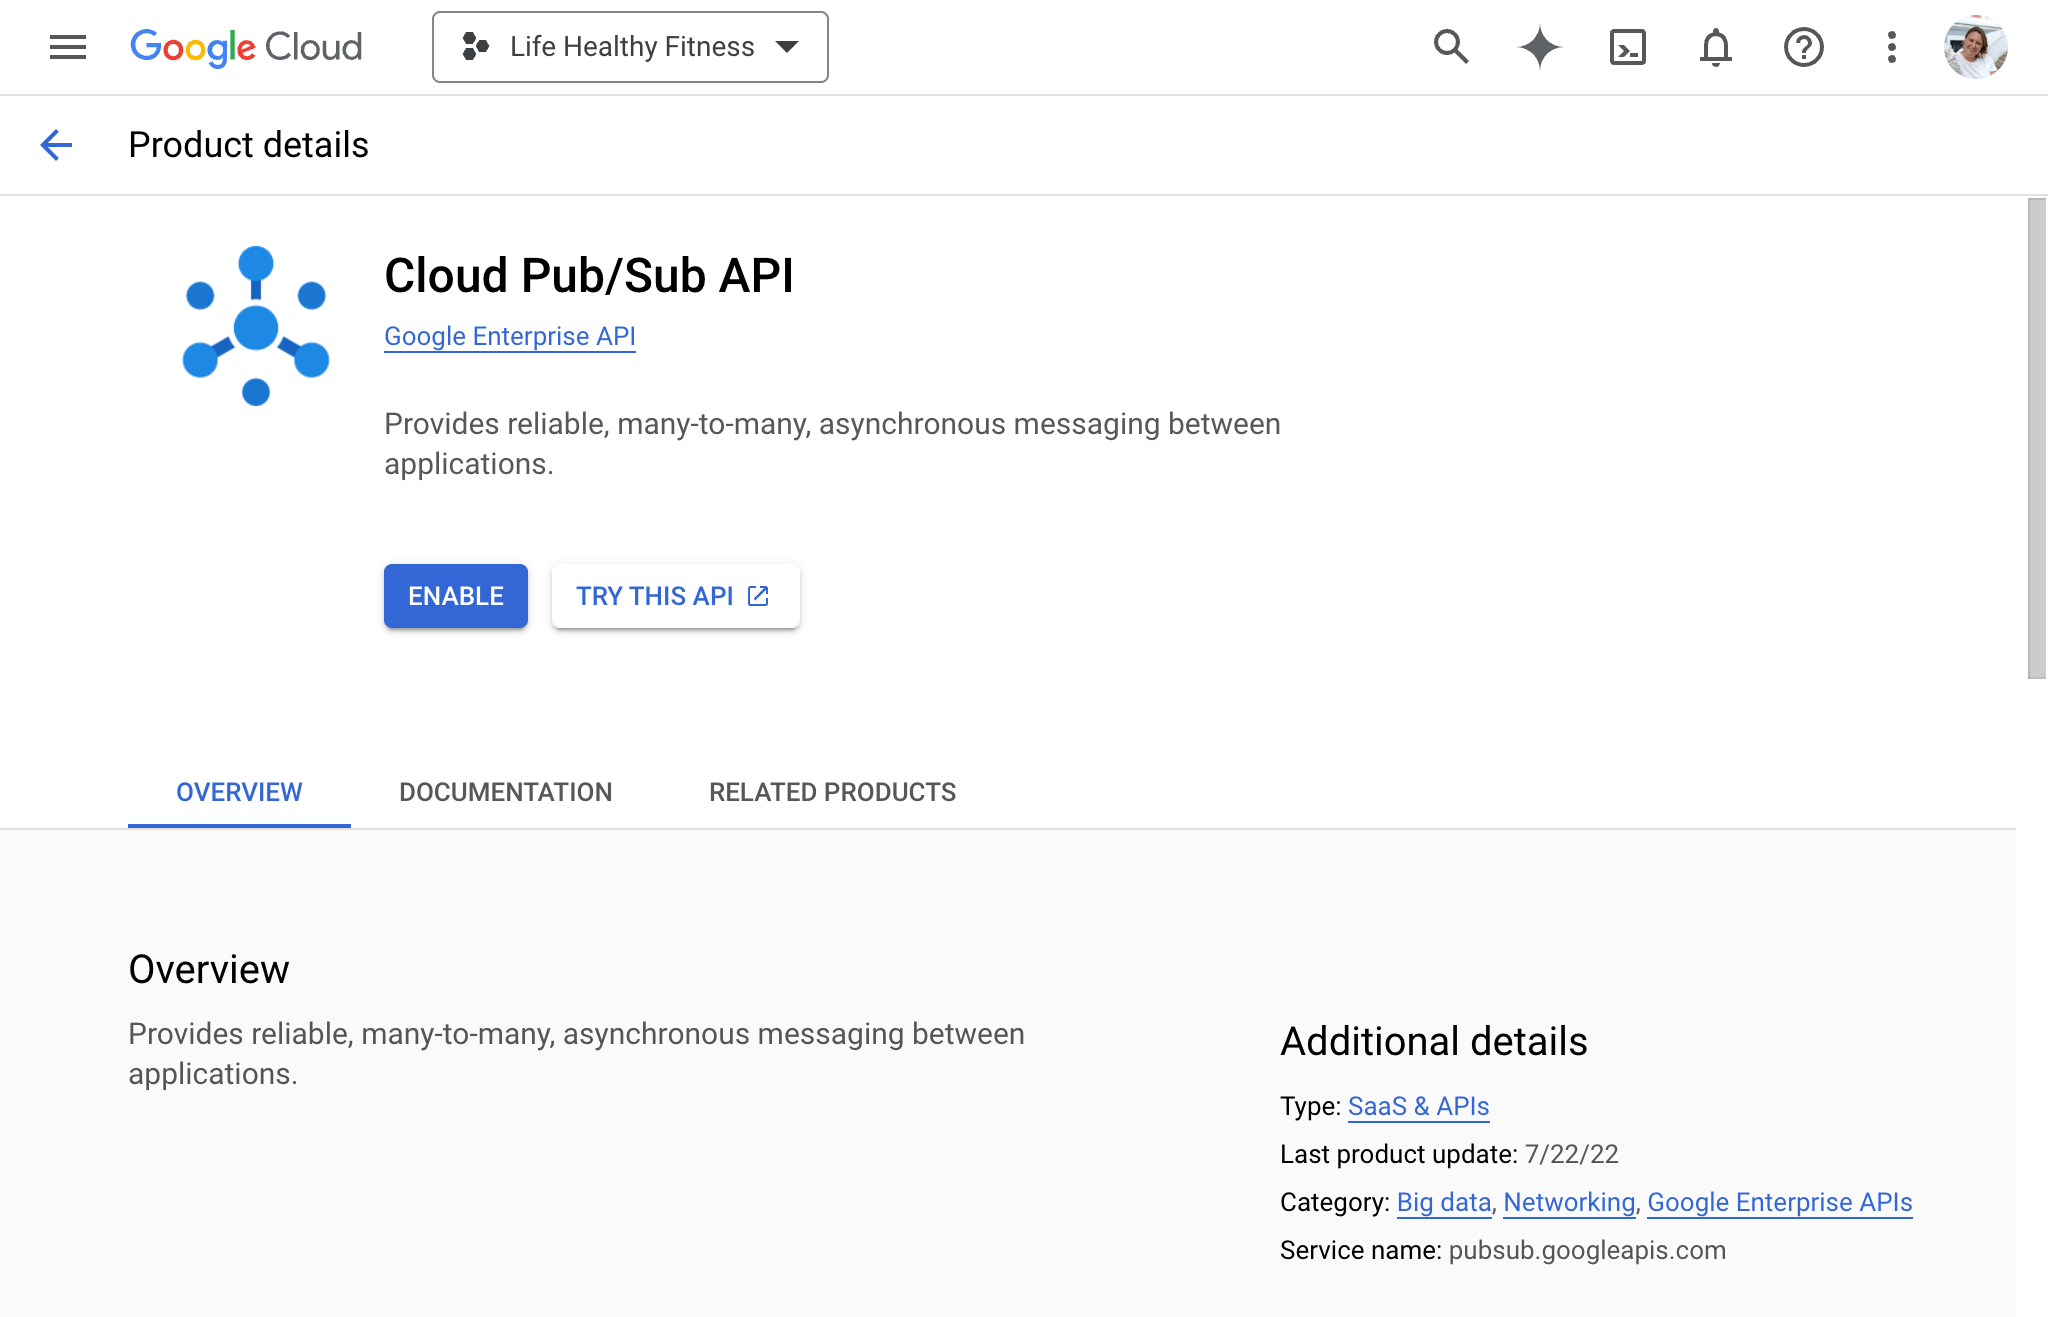 Enabling Cloud Pub/Sub API